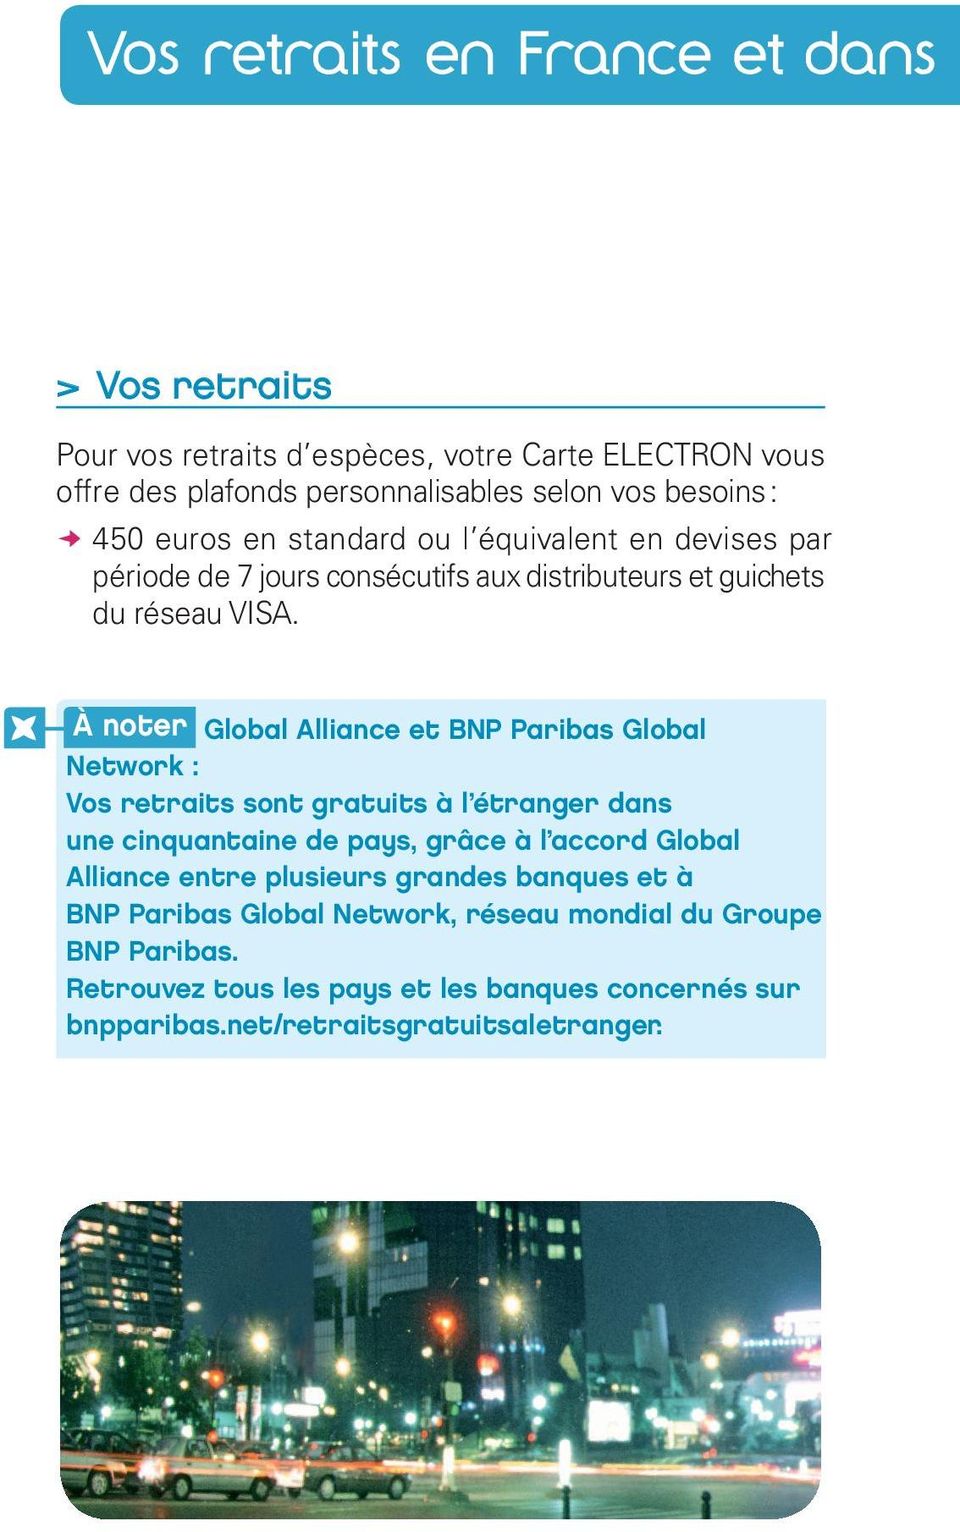 À noter Global Alliance et BNP Paribas Global Network : Vos retraits sont gratuits à l étranger dans une cinquantaine de pays, grâce à l accord Global Alliance